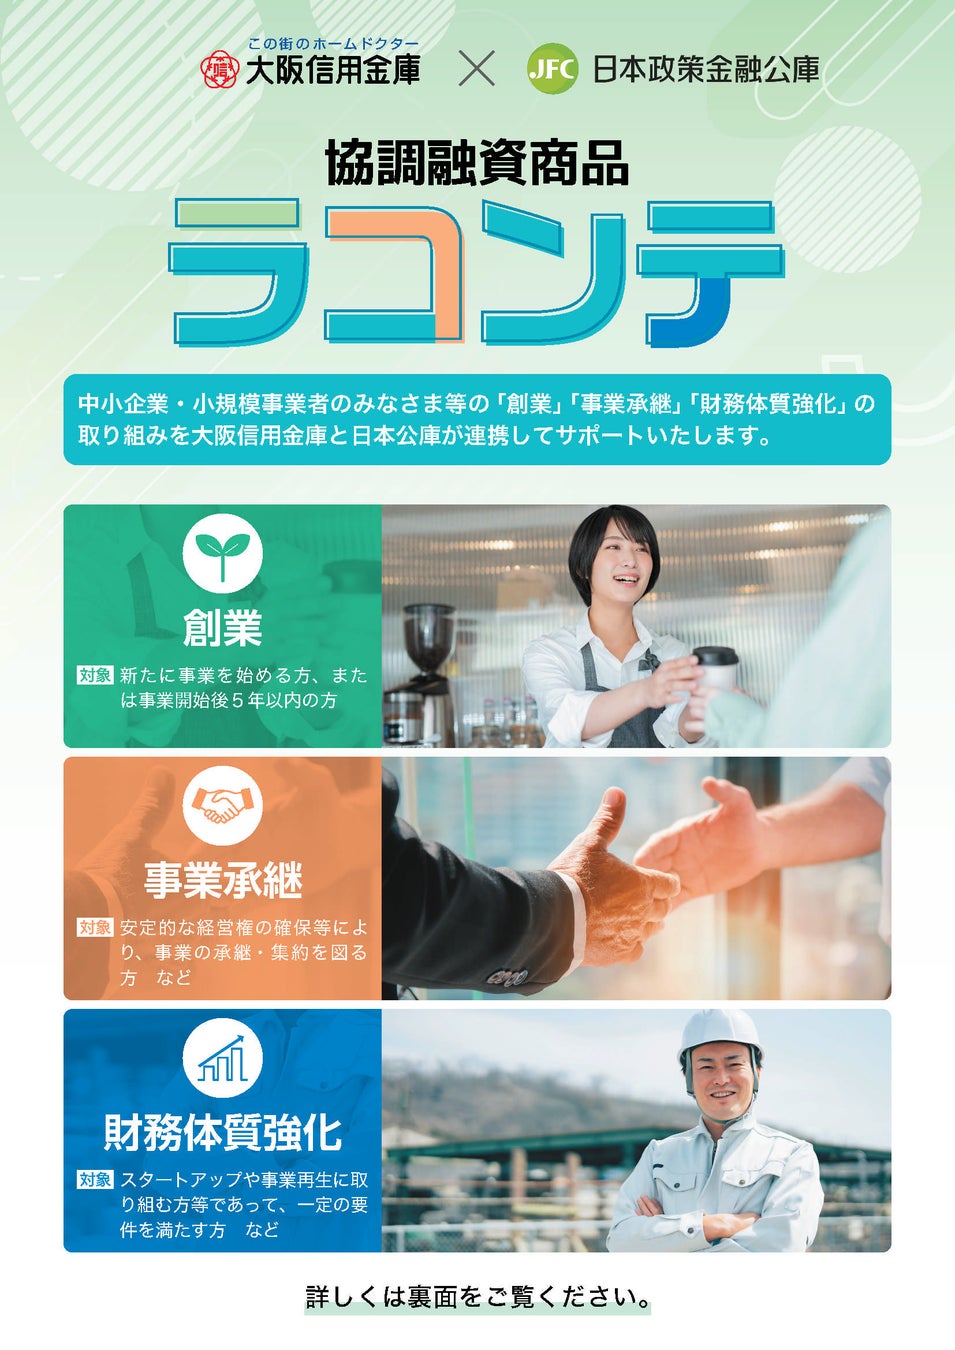 大阪信用金庫と日本公庫との協調融資商品「ラコンテ」を創設！